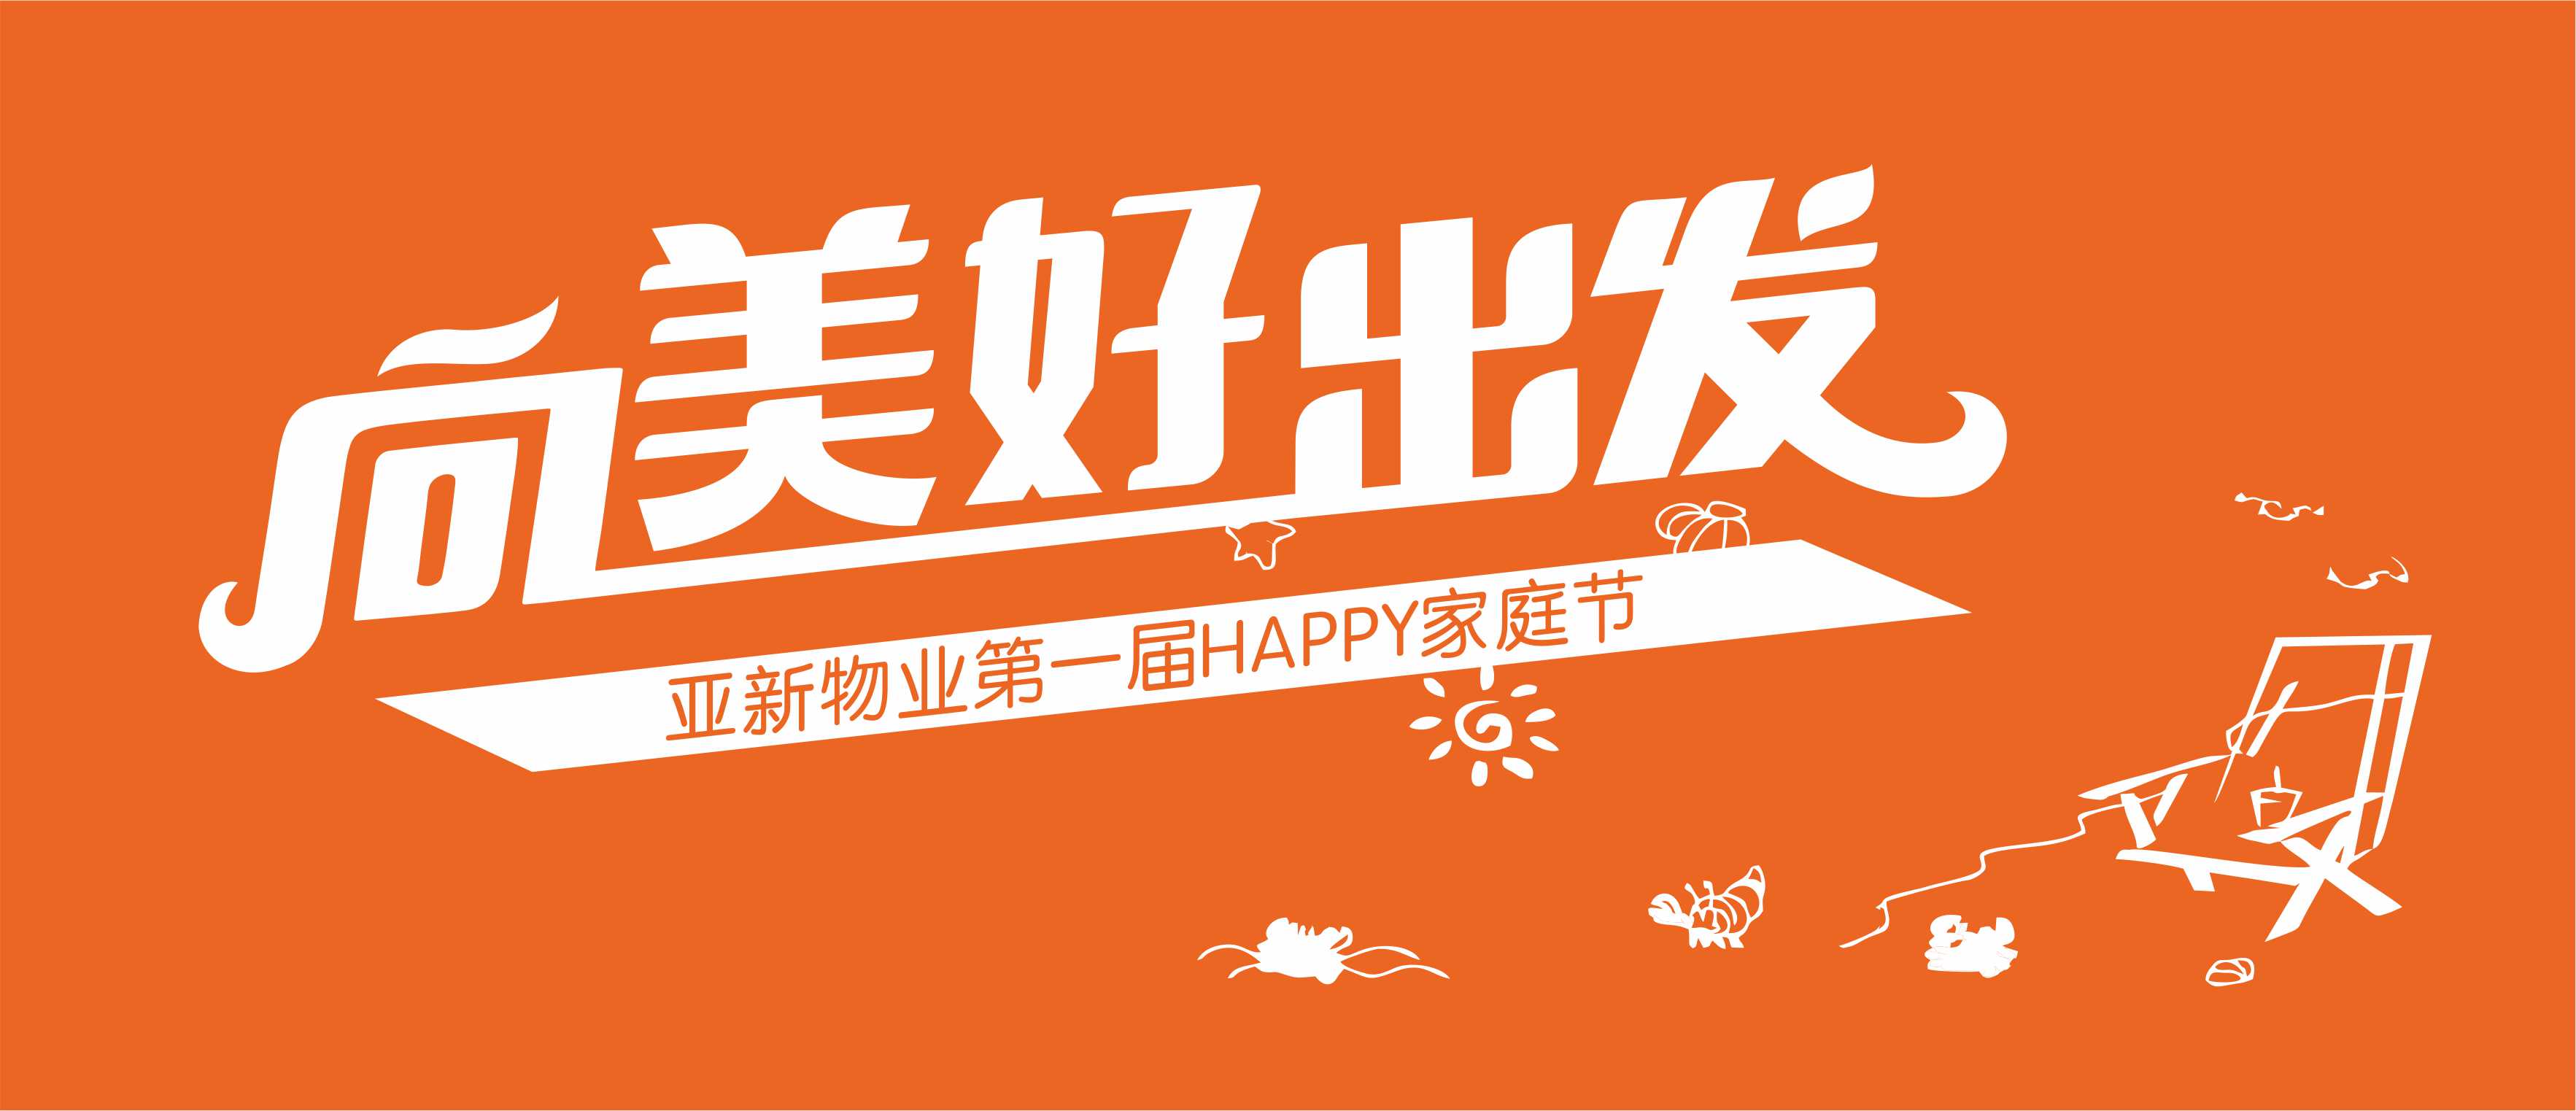 向美好出发亚新物业第一届HAPPY家庭节活动报名